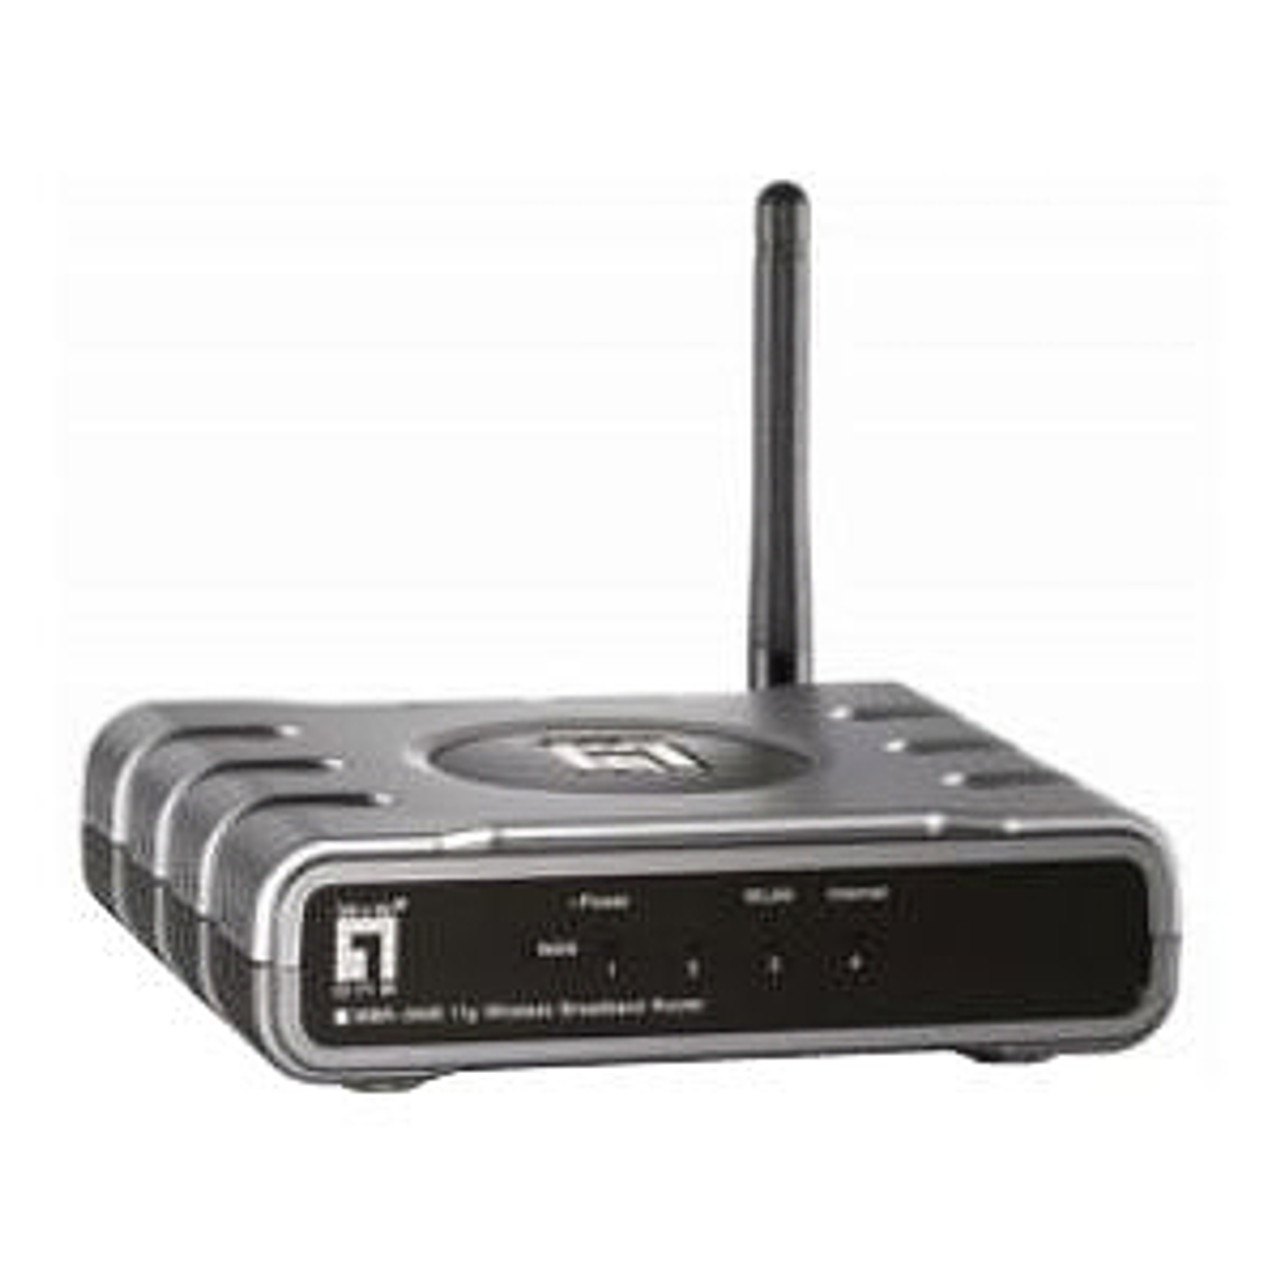 ING32519 LevelOne WBR-3408 Wireless G Broadband Router 4 x 10/100Base-TX LAN, 1 x 10/100Base-TX WAN IEEE 802.11b/g 54Mbps (Refurbished)